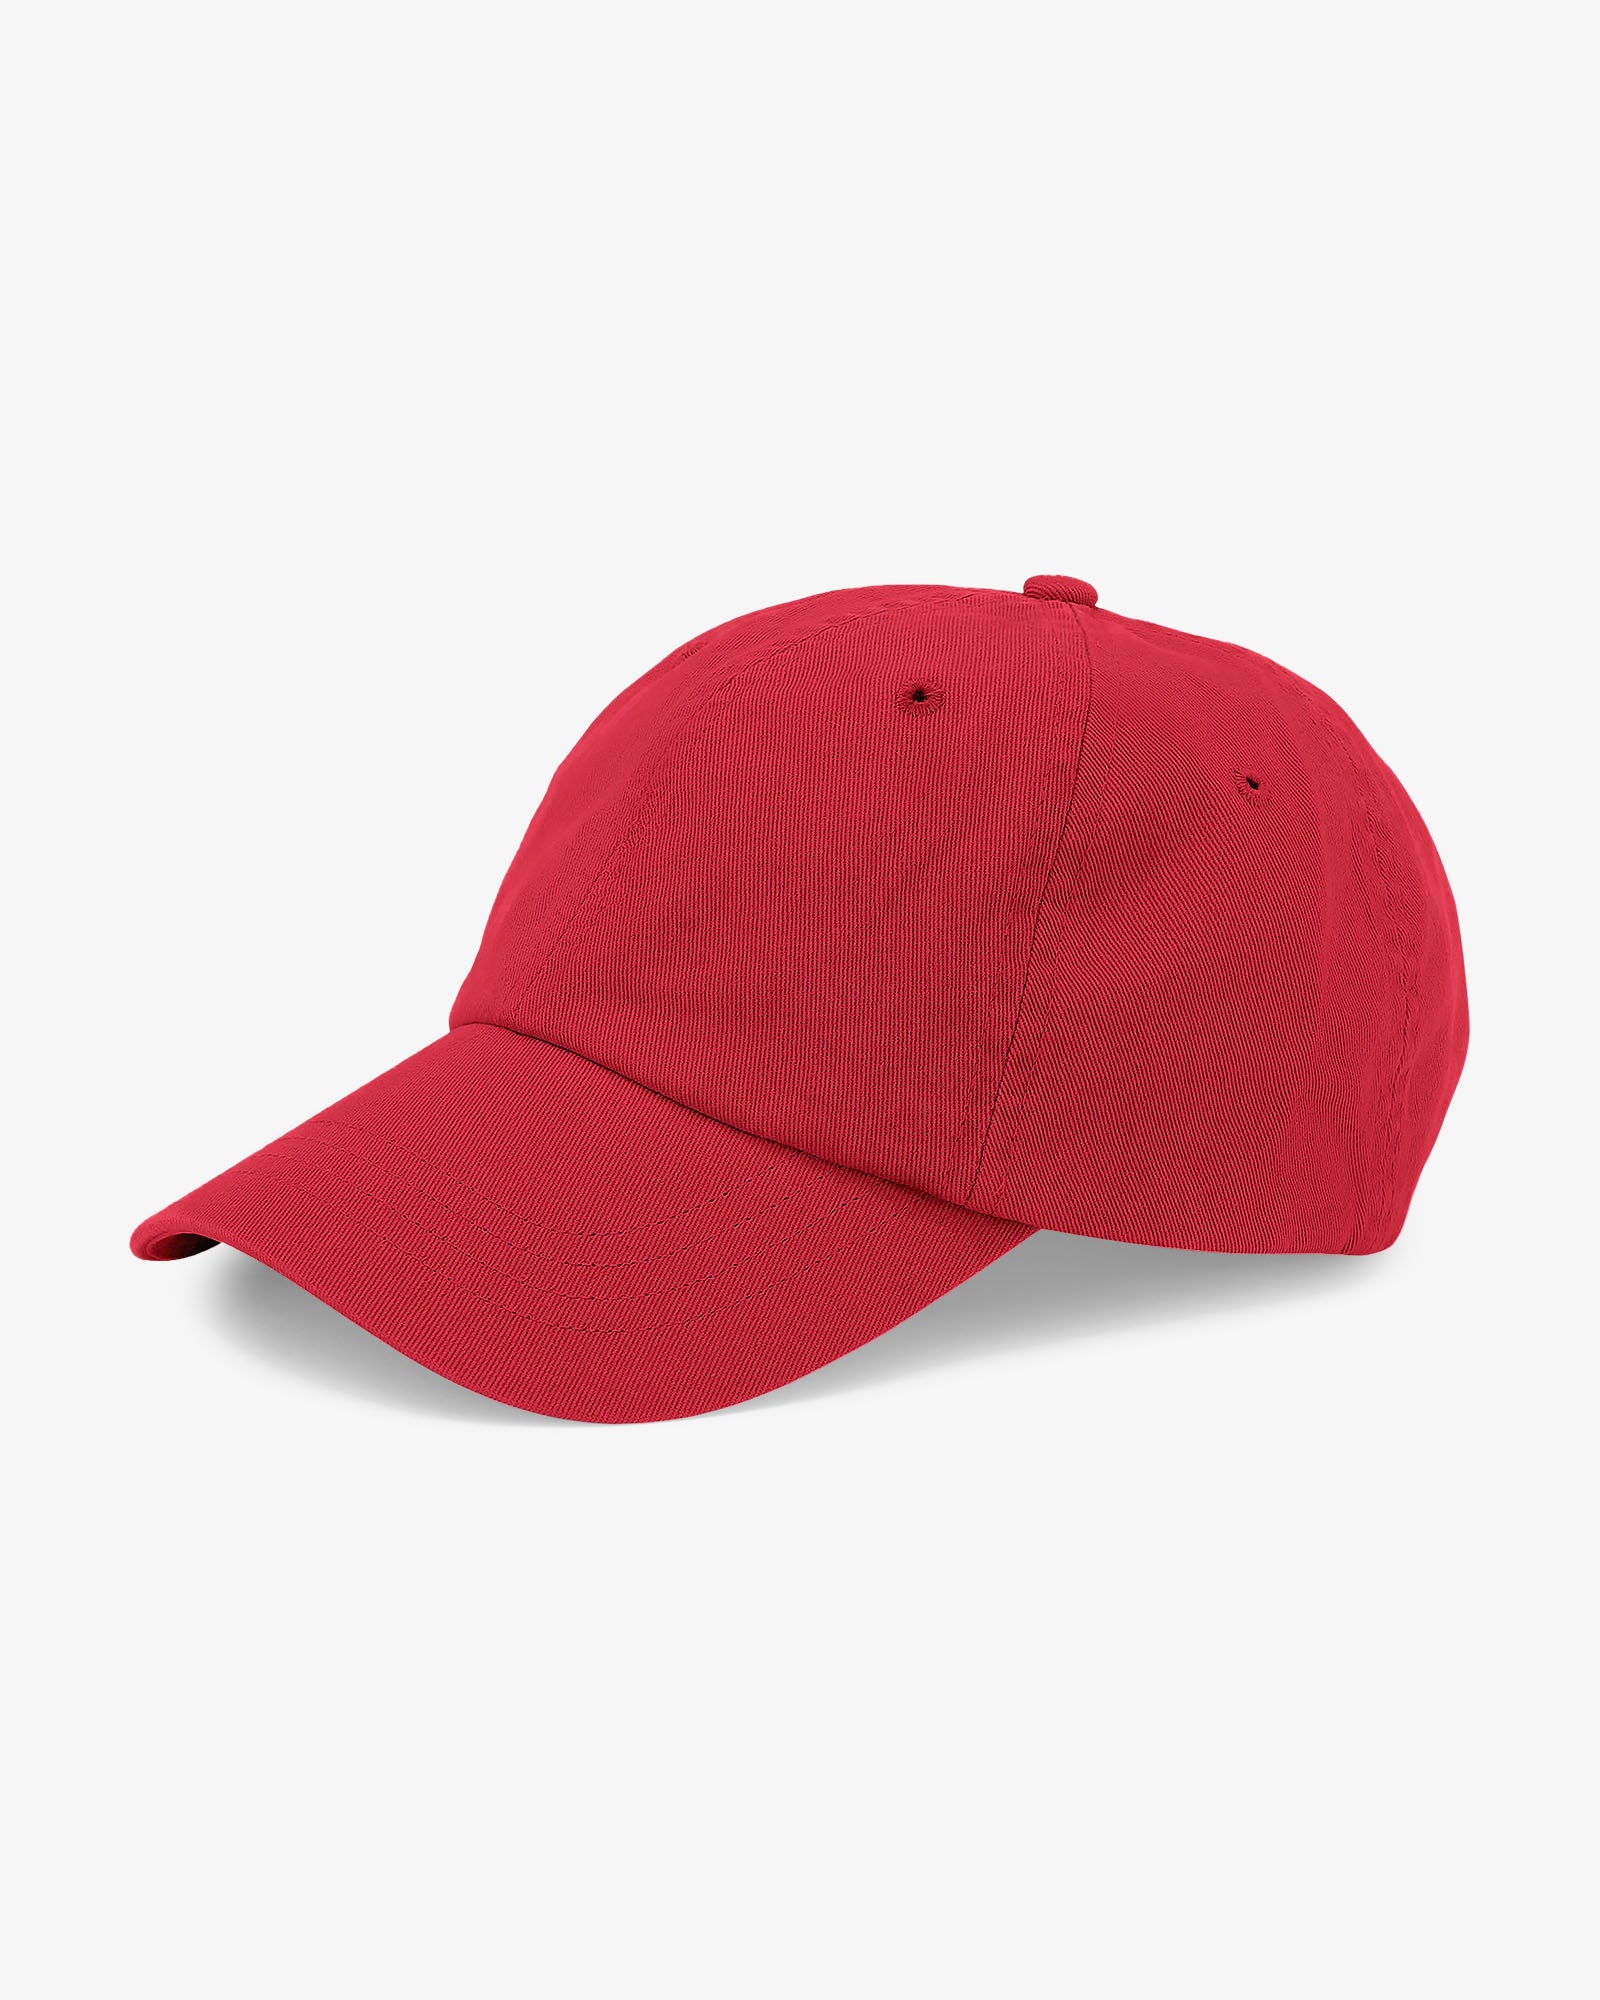 Organic Cotton Cap - Scarlet Red